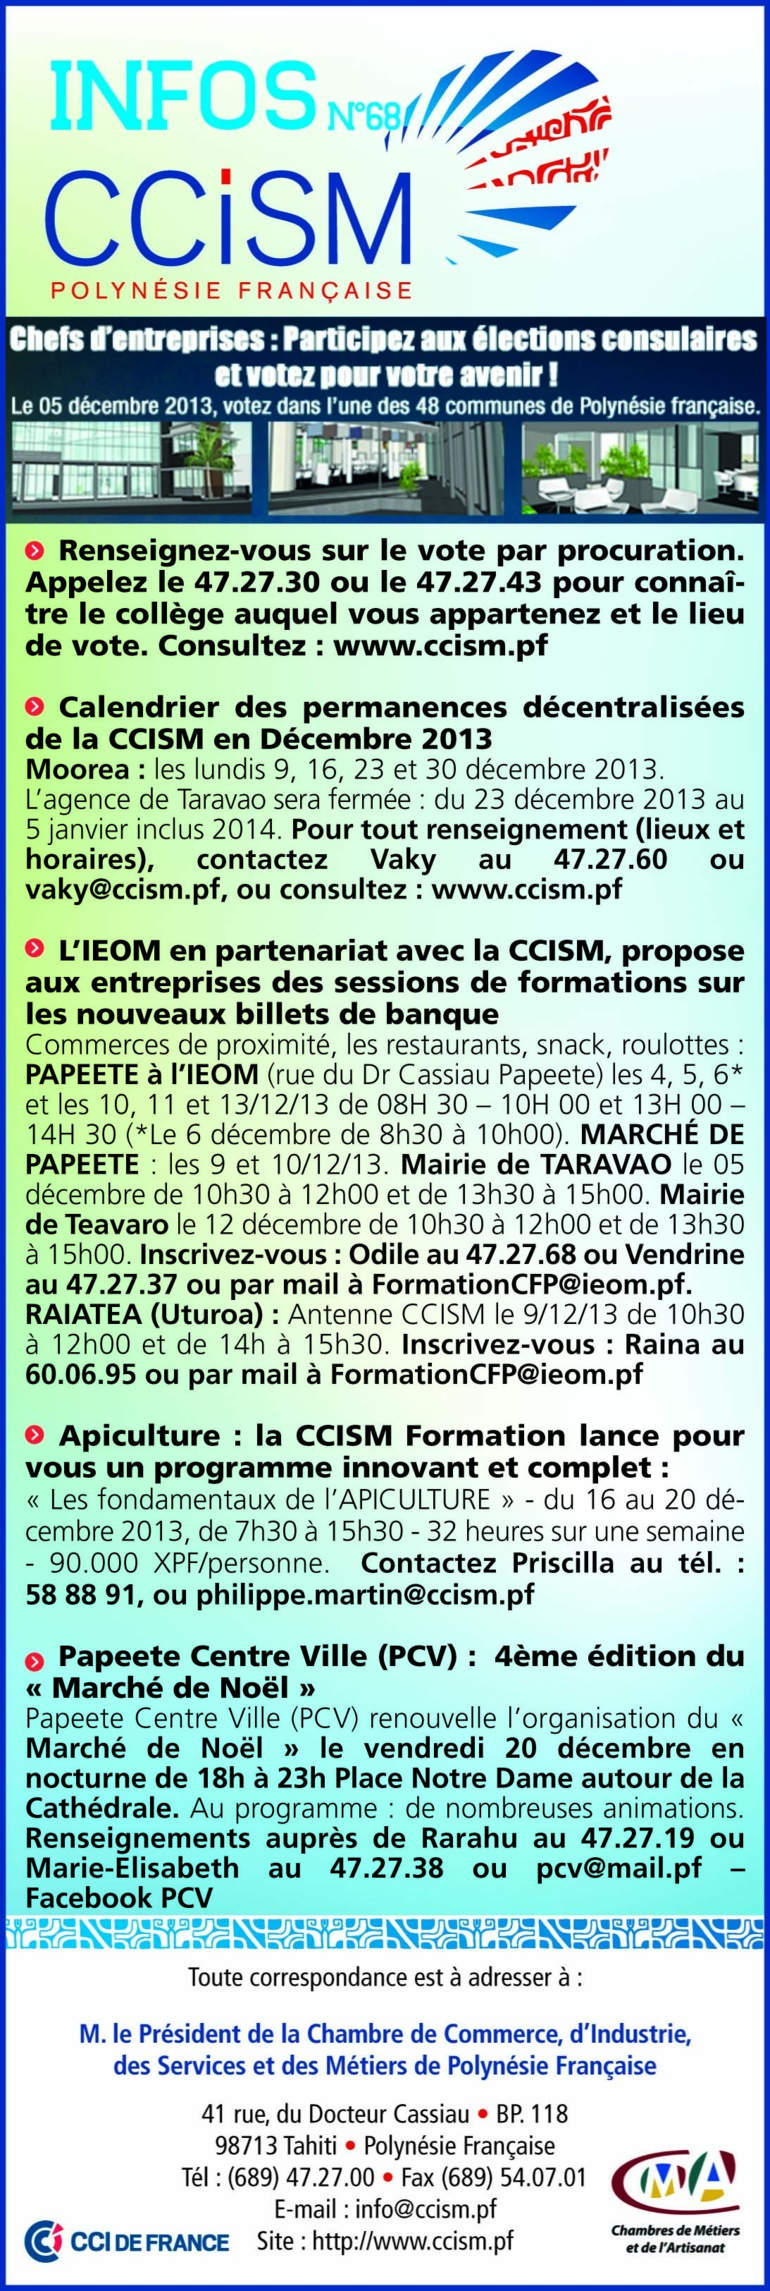 Infos CCISM N°68